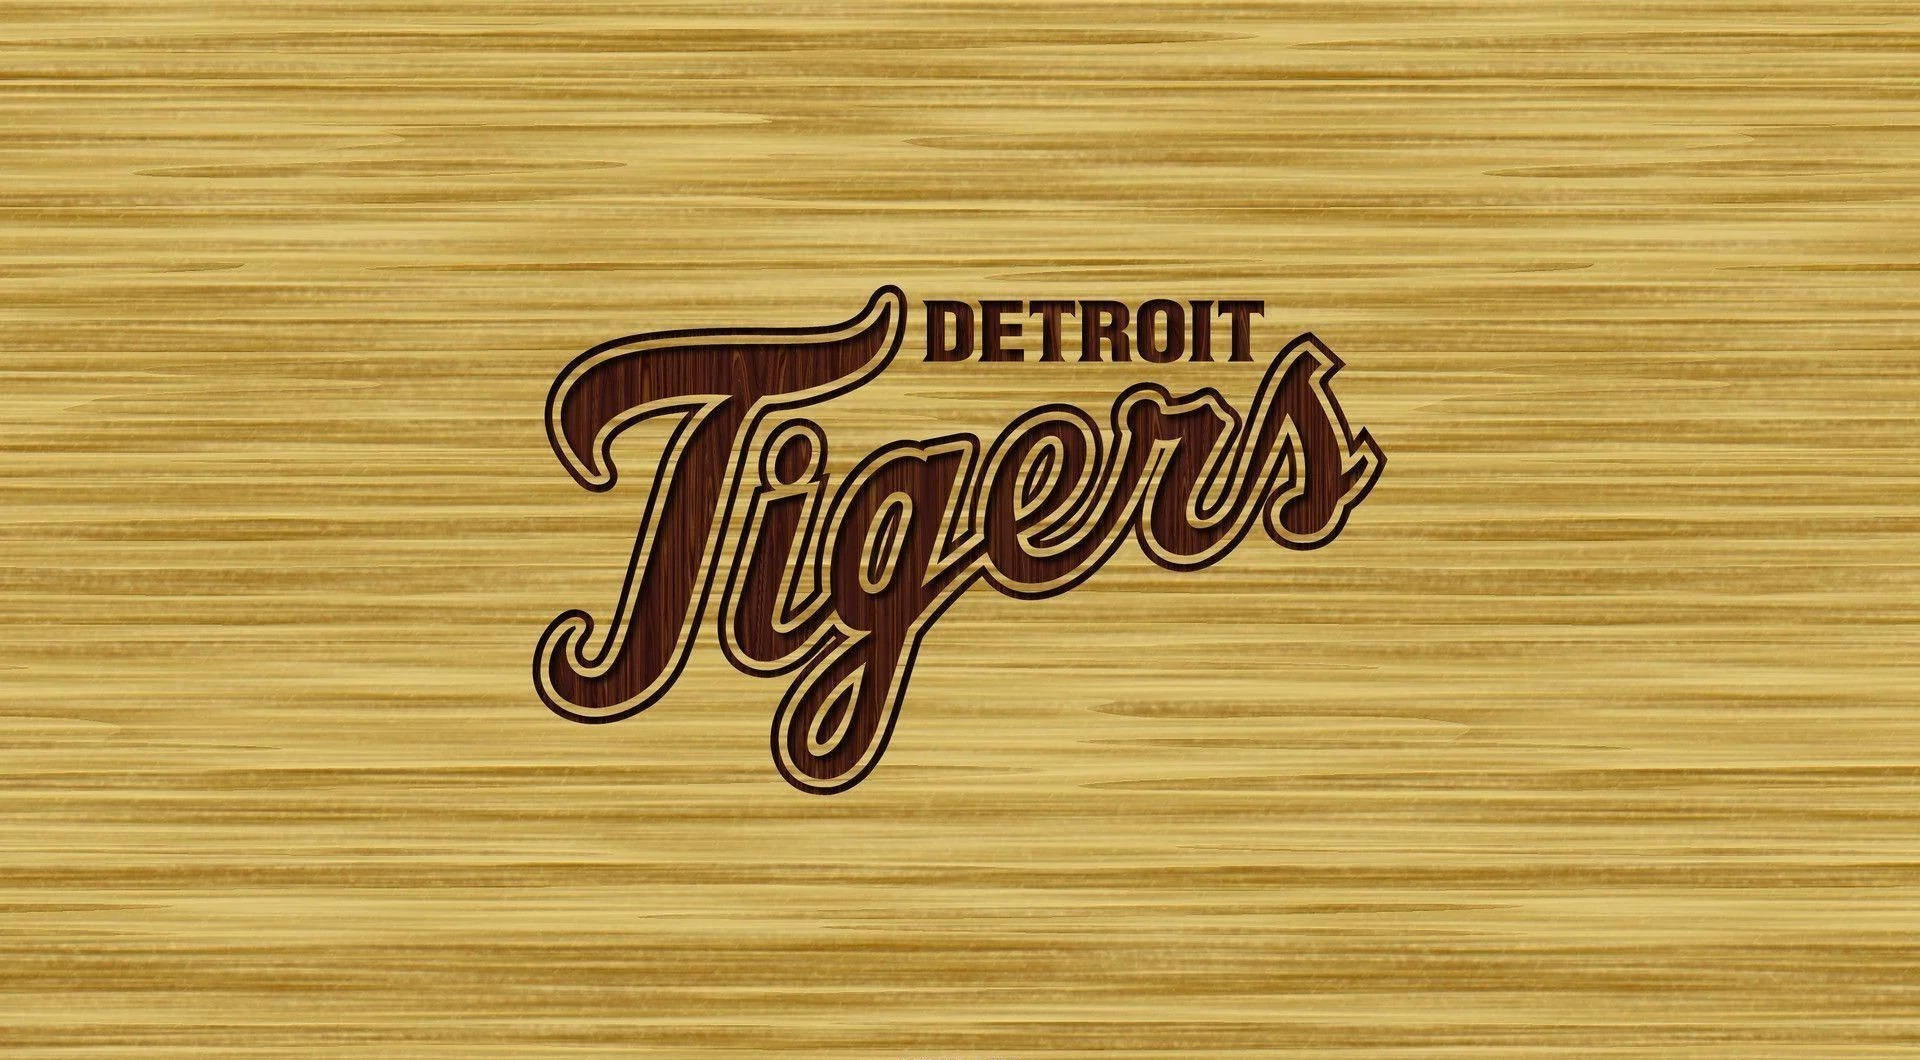 Detroit Tigers Bilder